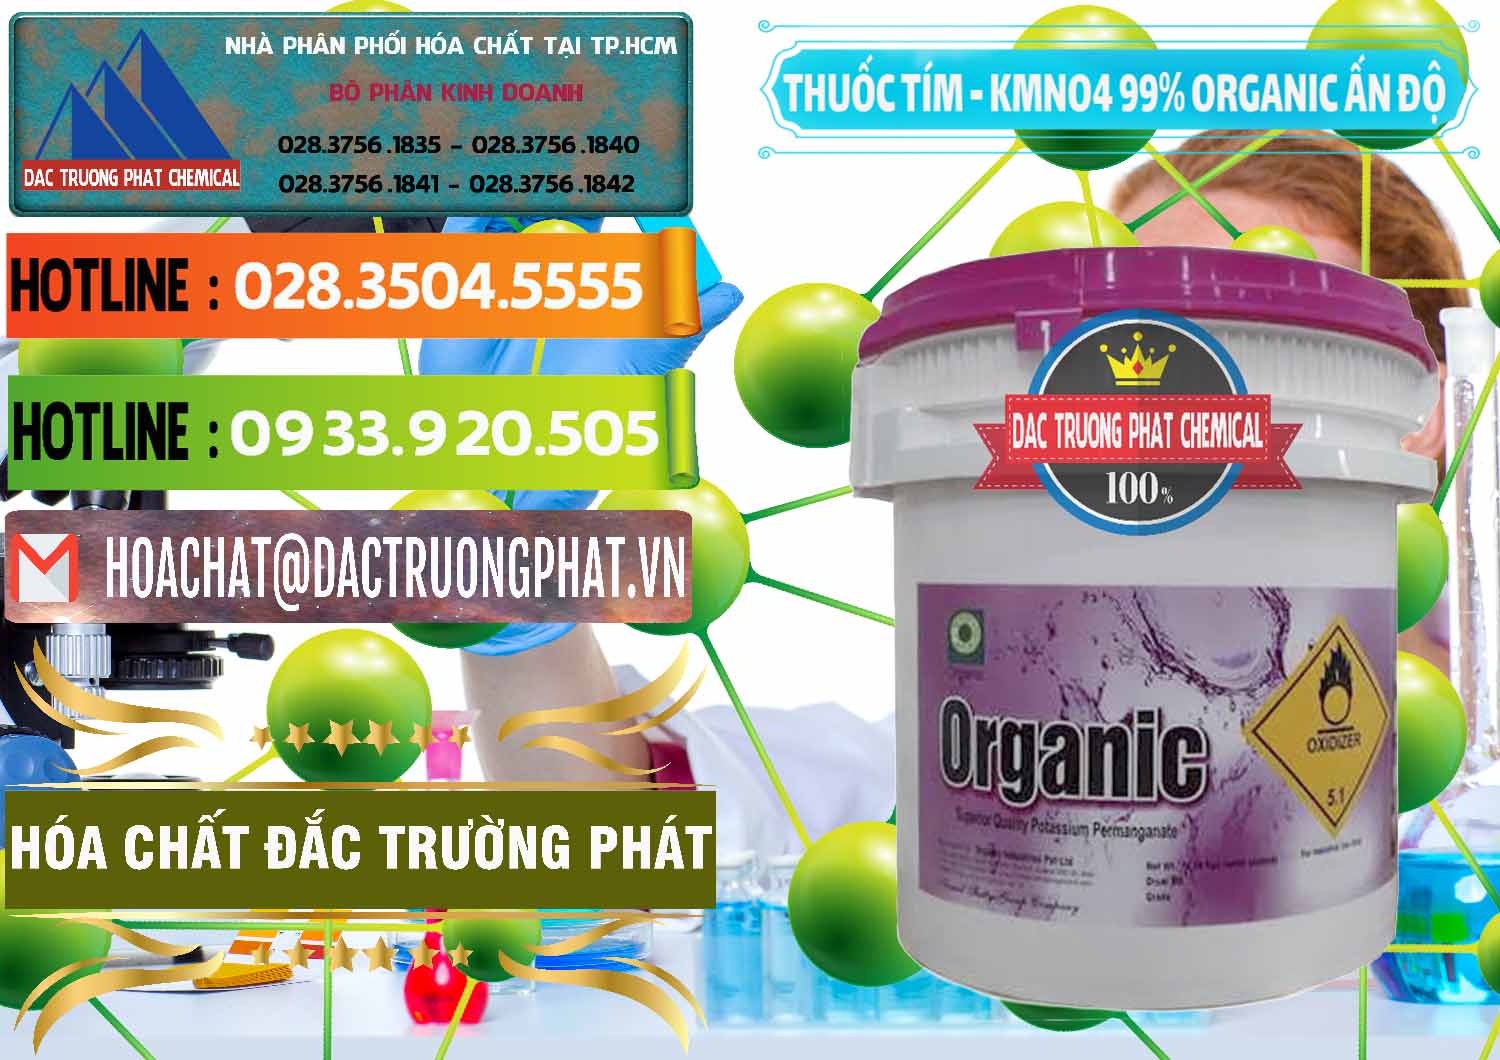 Cung ứng và bán Thuốc Tím - KMNO4 99% Organic Ấn Độ India - 0216 - Công ty cung cấp & phân phối hóa chất tại TP.HCM - cungcaphoachat.com.vn